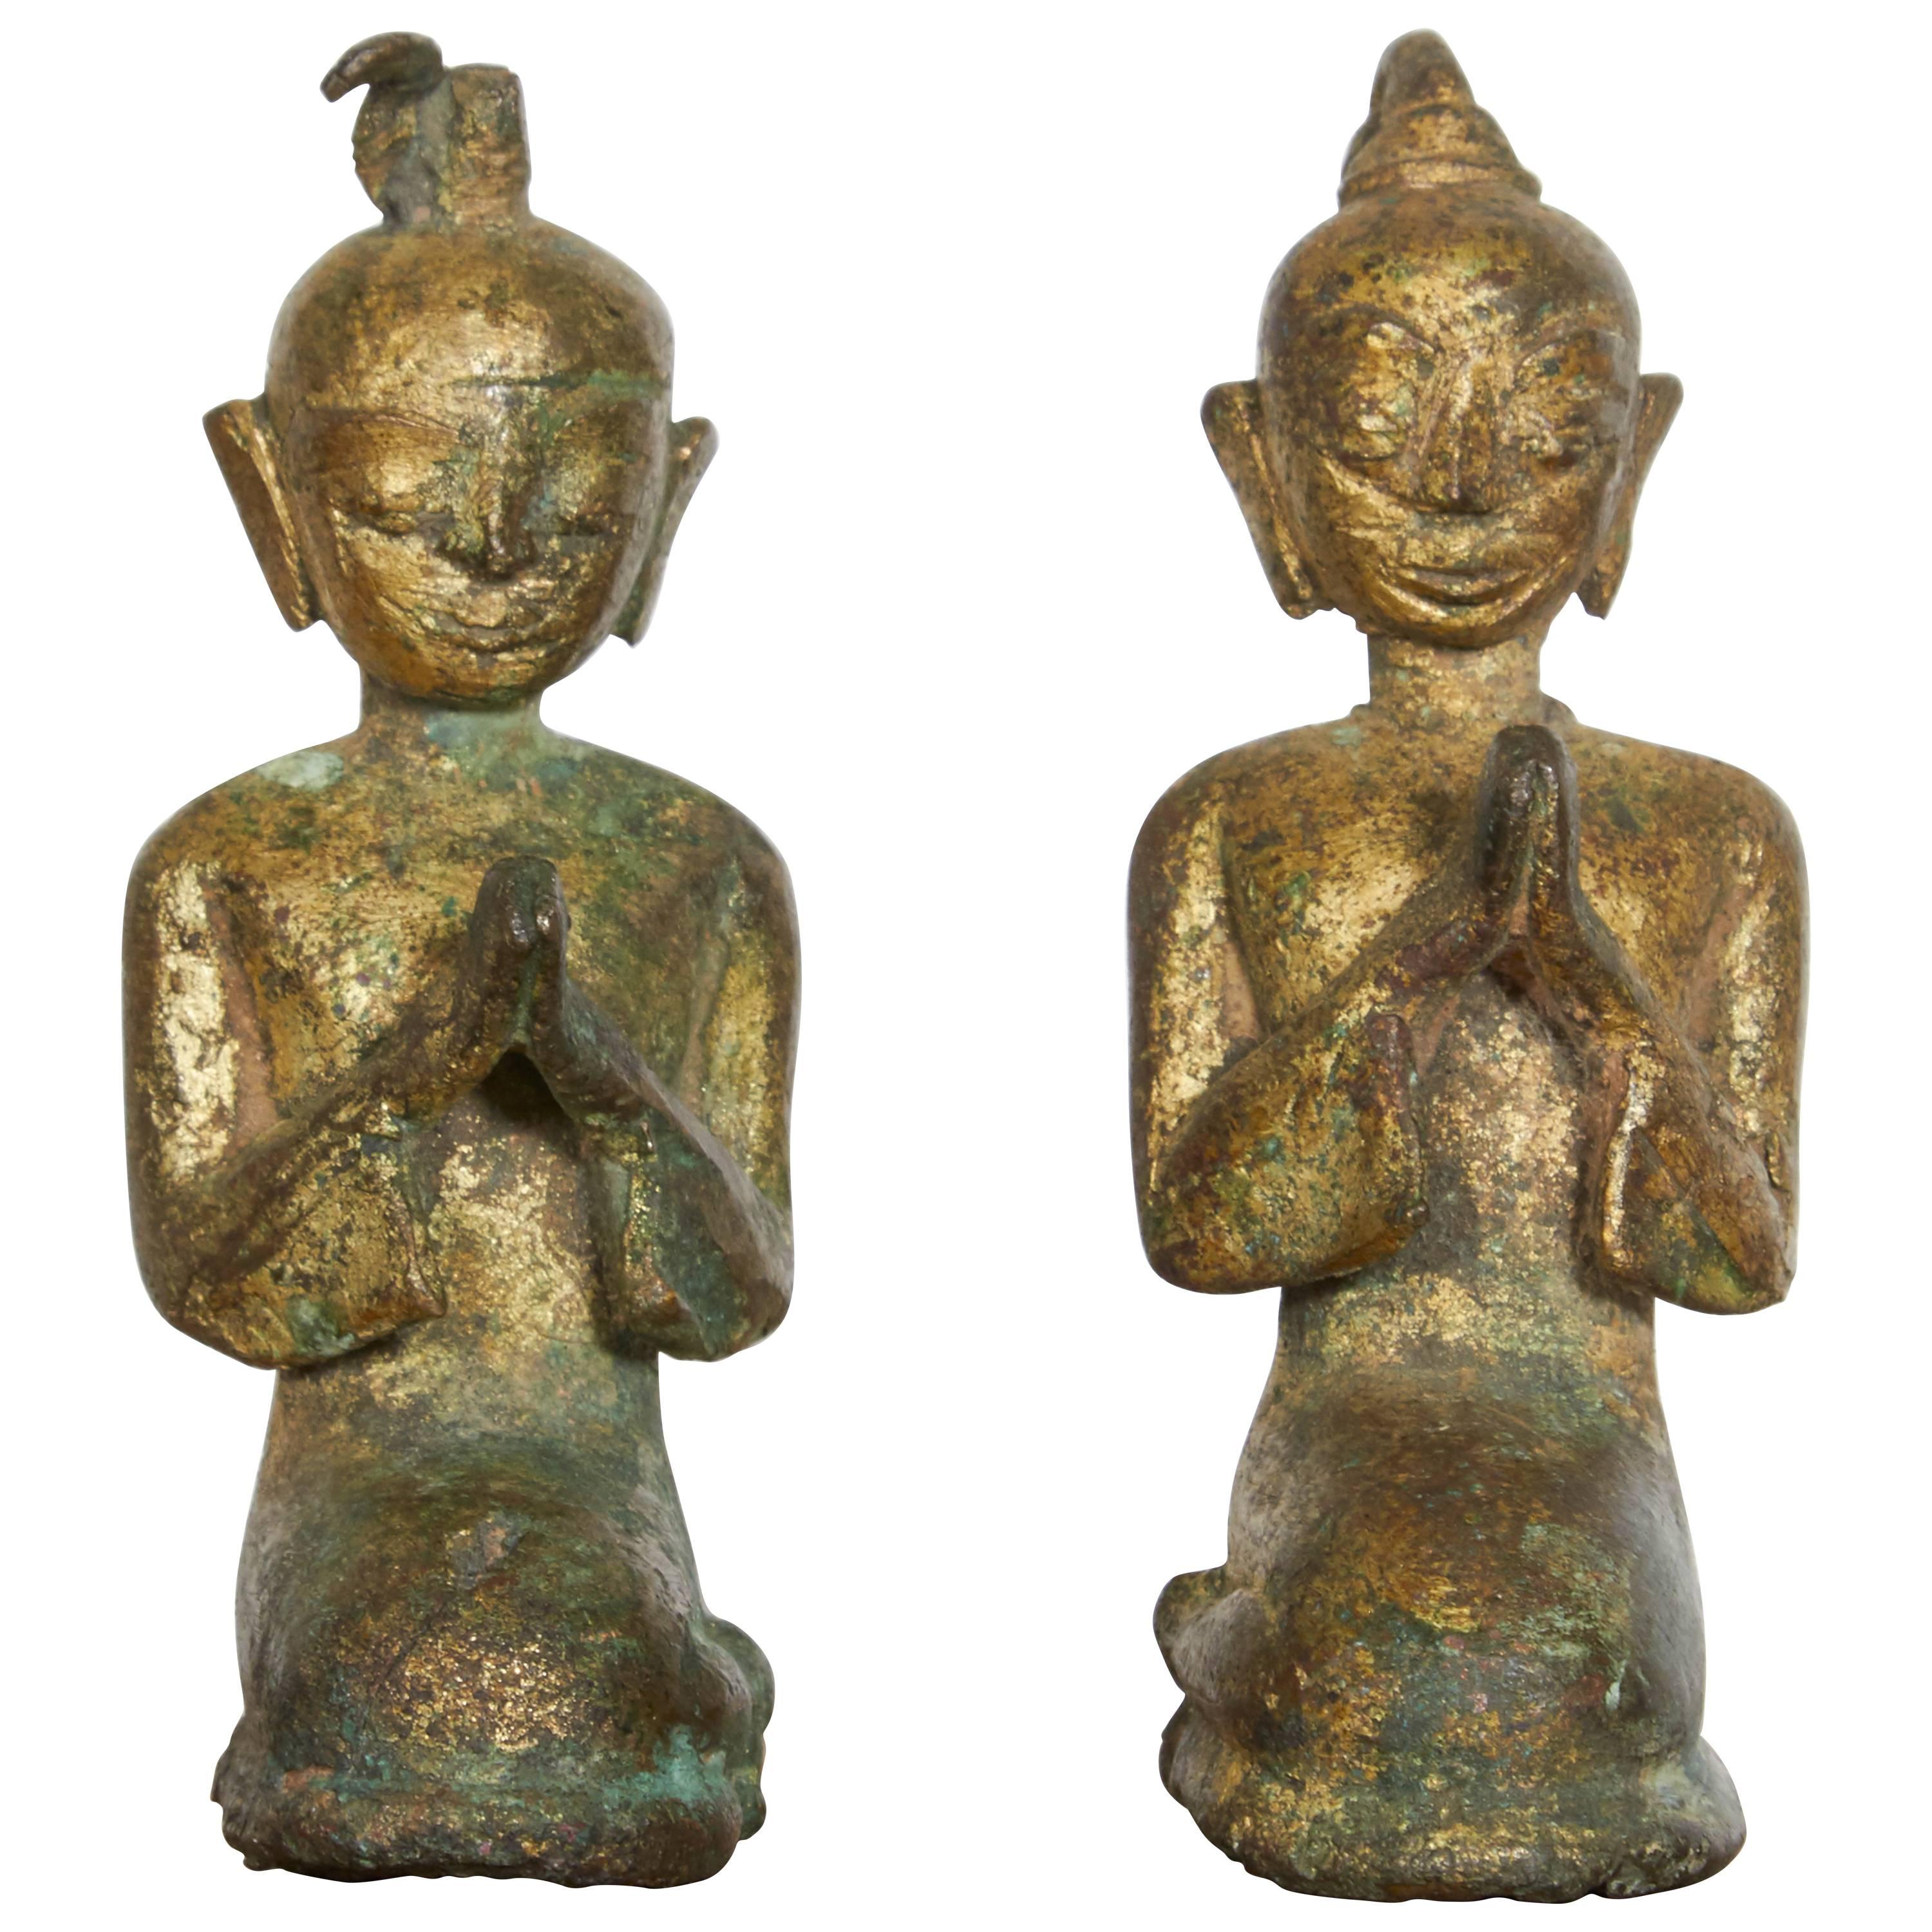 Paire de moines priants miniatures en bronze du 19ème siècle provenant de Thaïlande